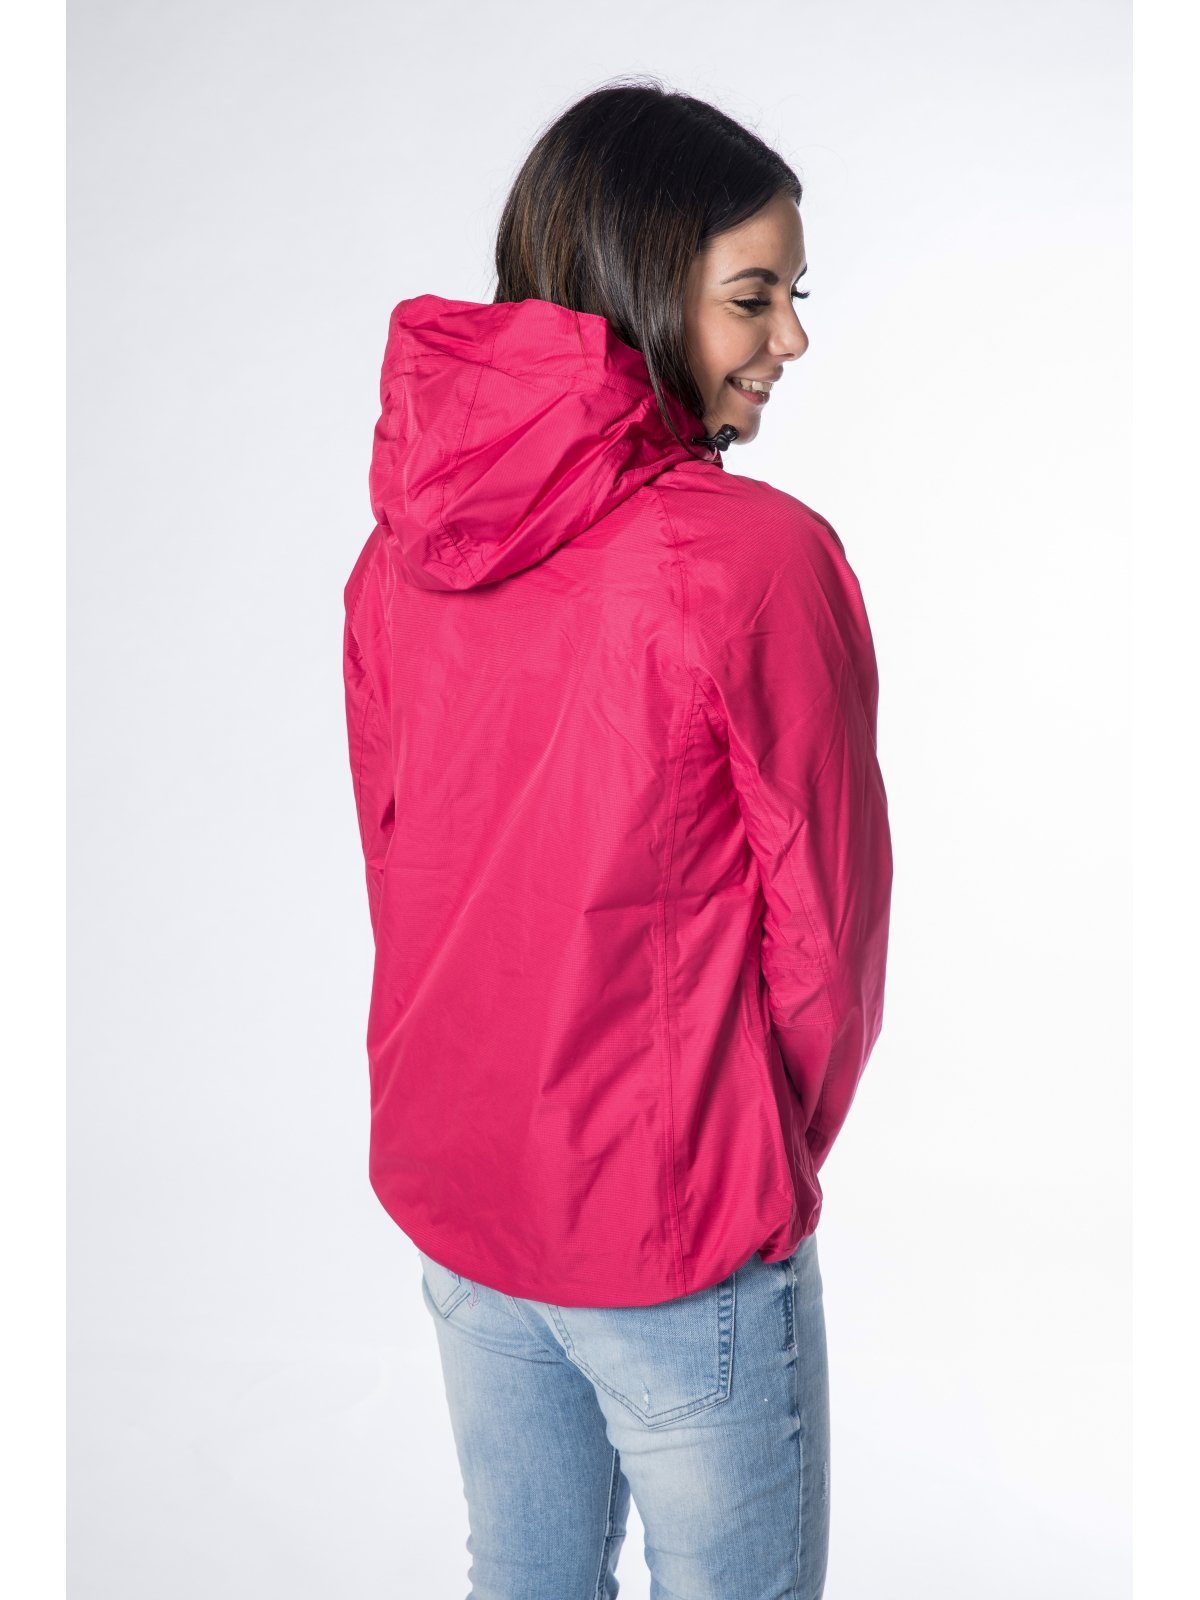 Damen Jacken DEPROC Active Regenjacke DURELL WOMEN auch in Großen Größen erhältlich